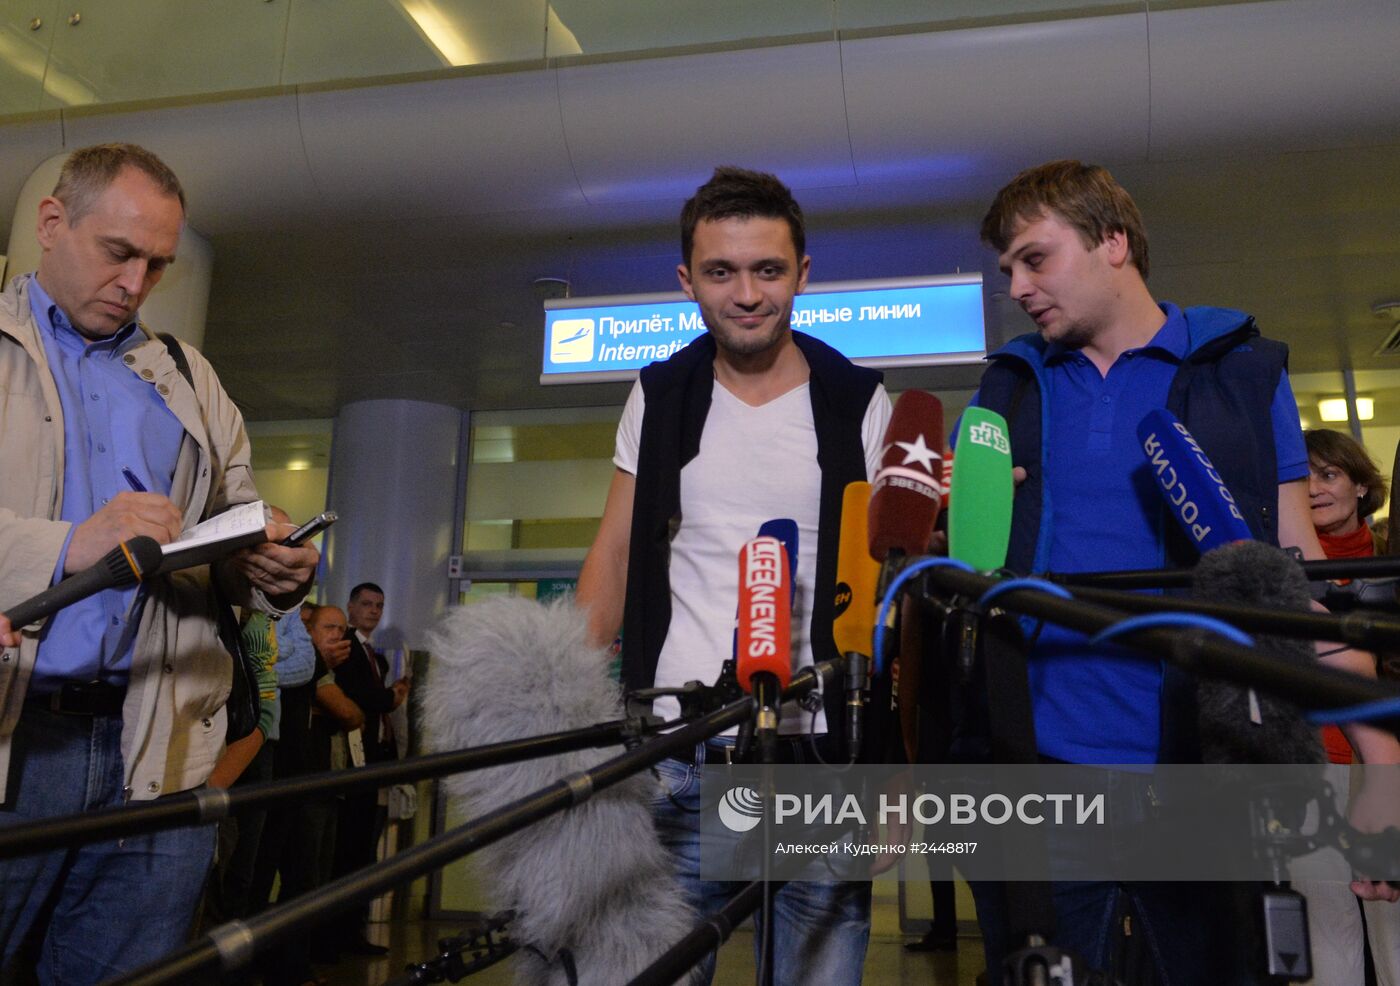 Встреча освобожденных на Украине журналистов российского телеканала "Звезда"